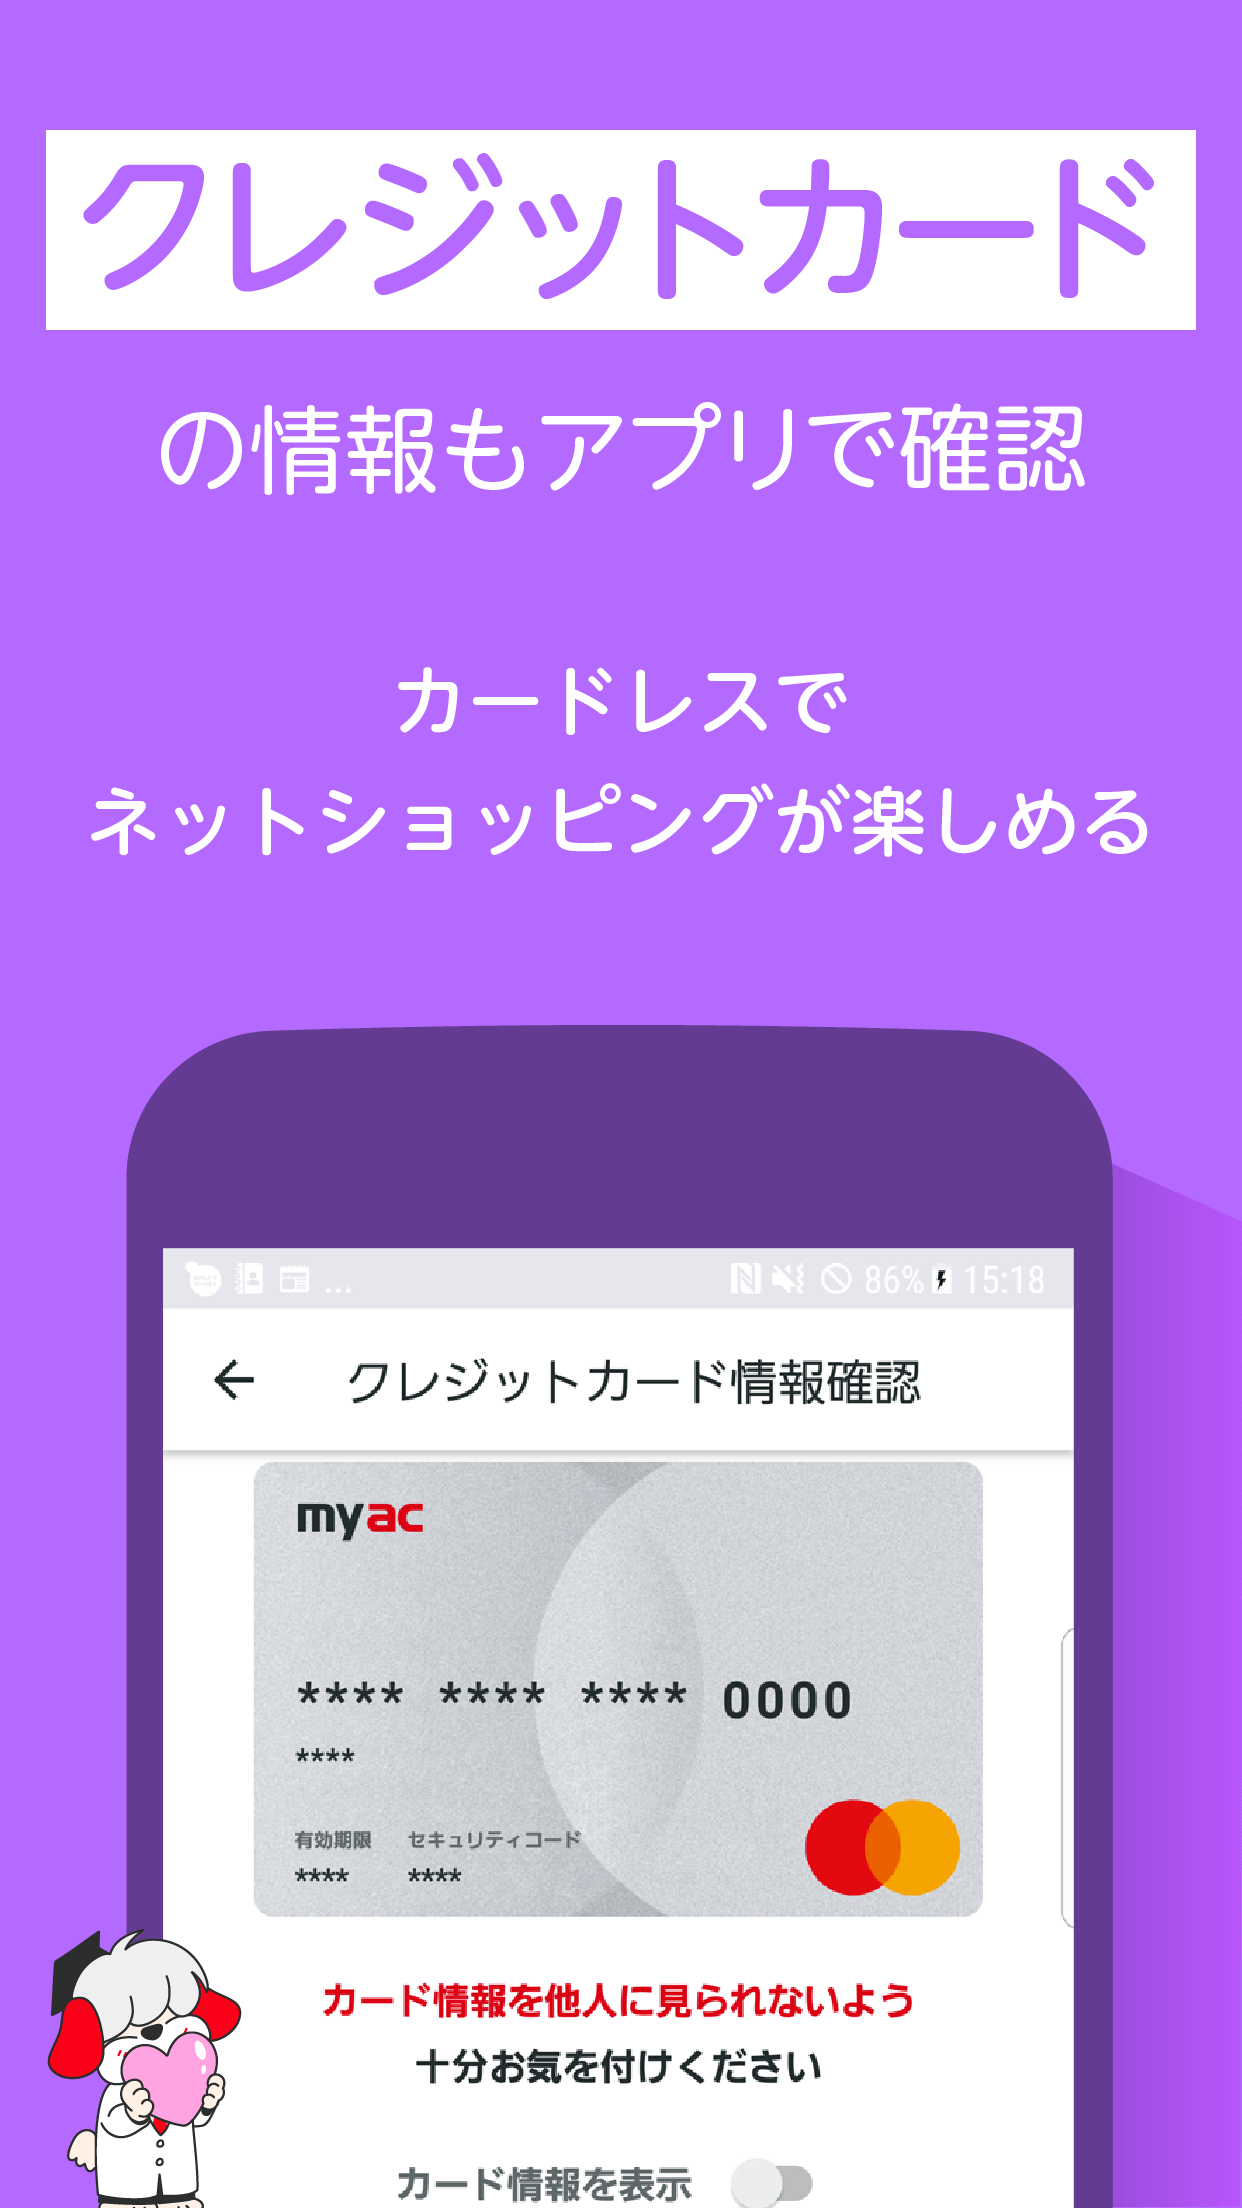 Android application アコム公式アプリ myac カードローン・クレジットカード screenshort